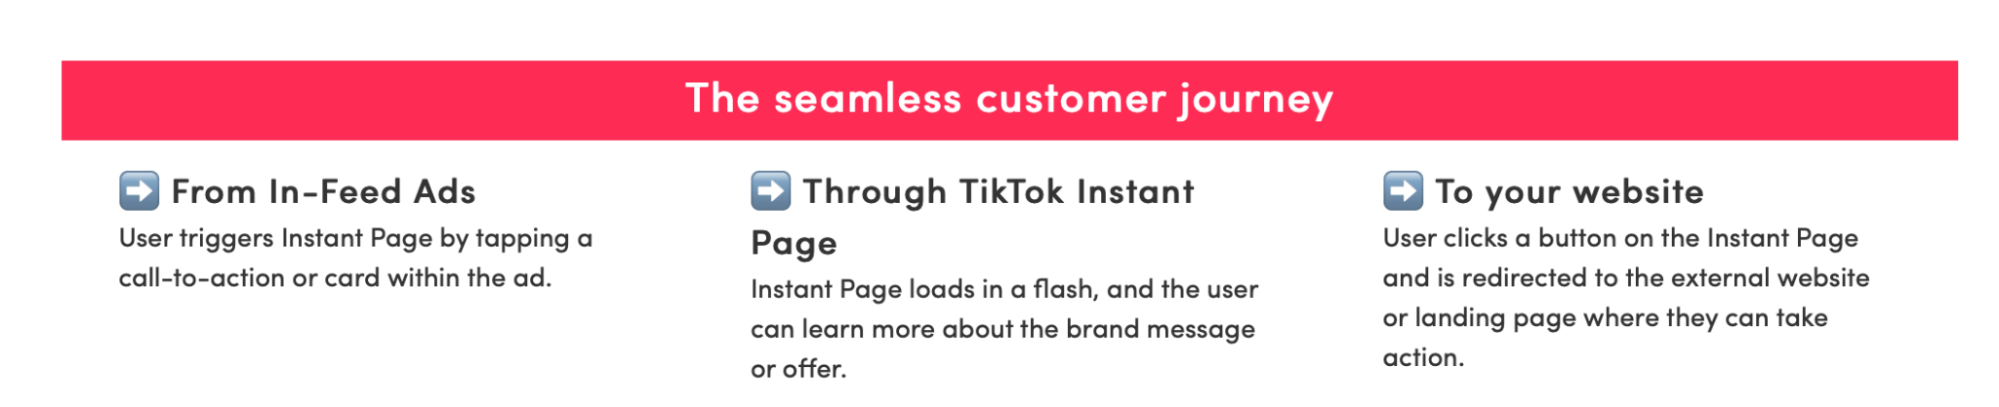 TikTok UA Seamless Customer Journey